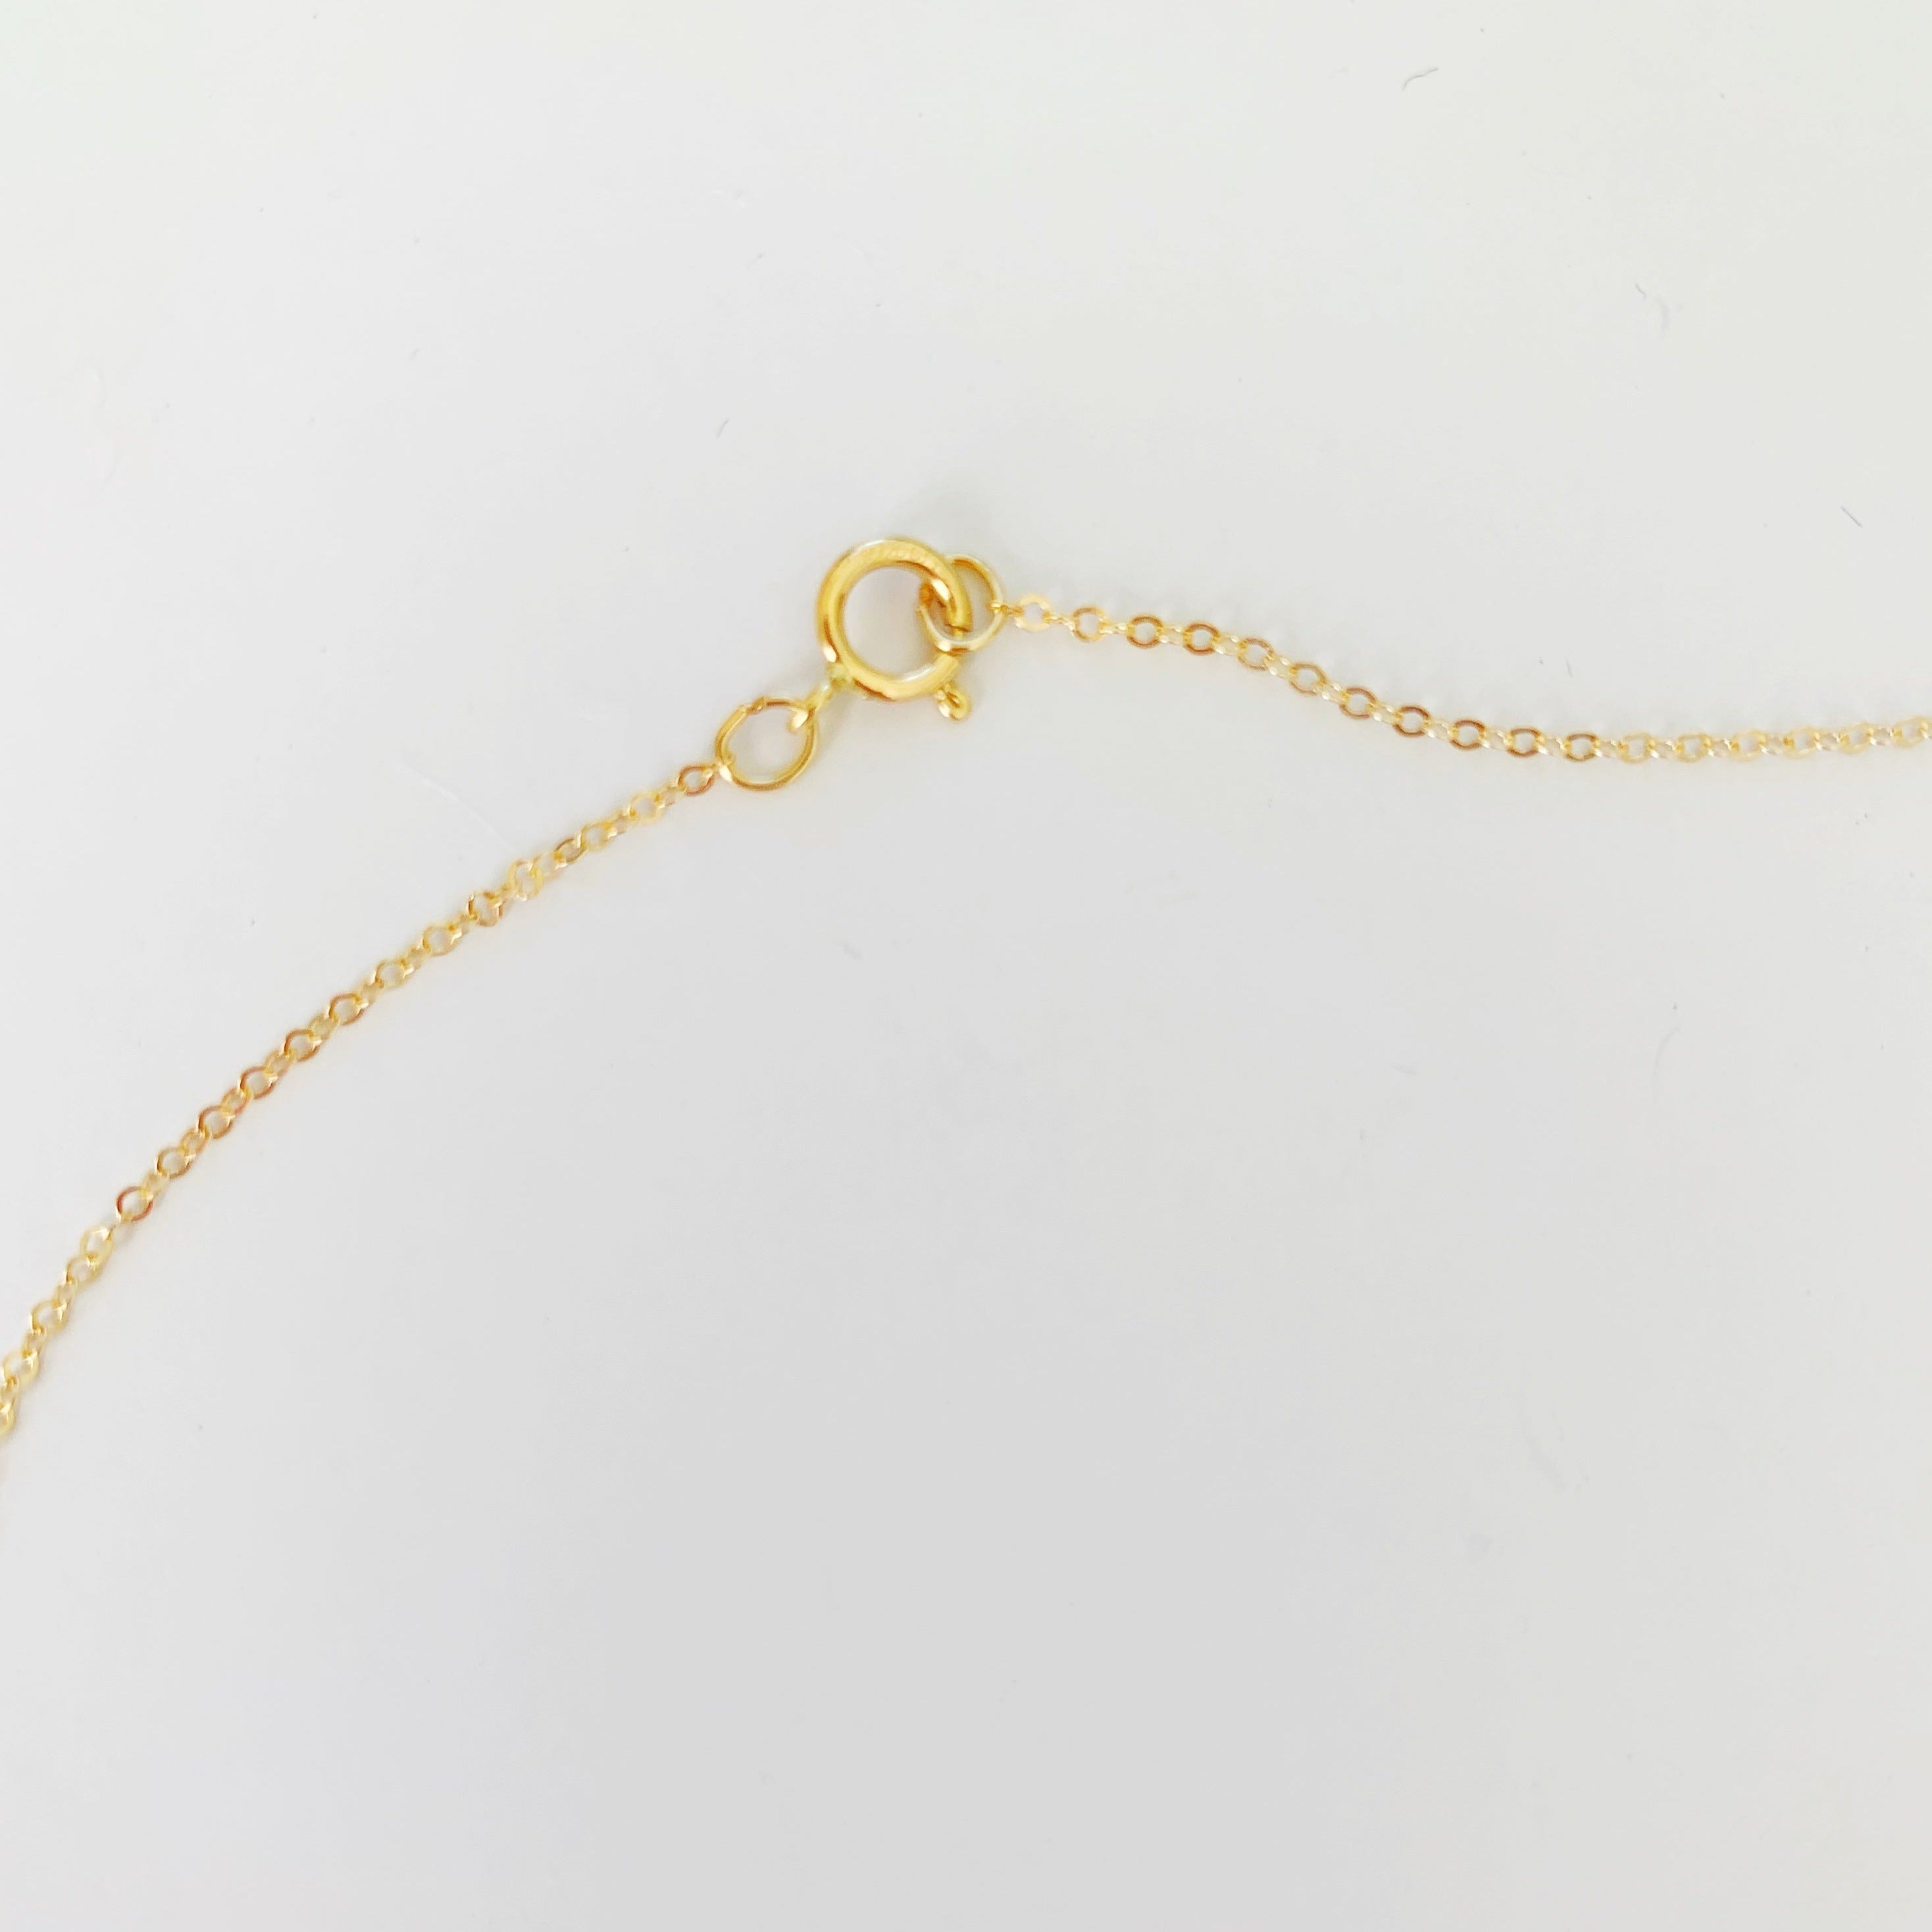 Pearl Necklace Size Comparison – Pernulo